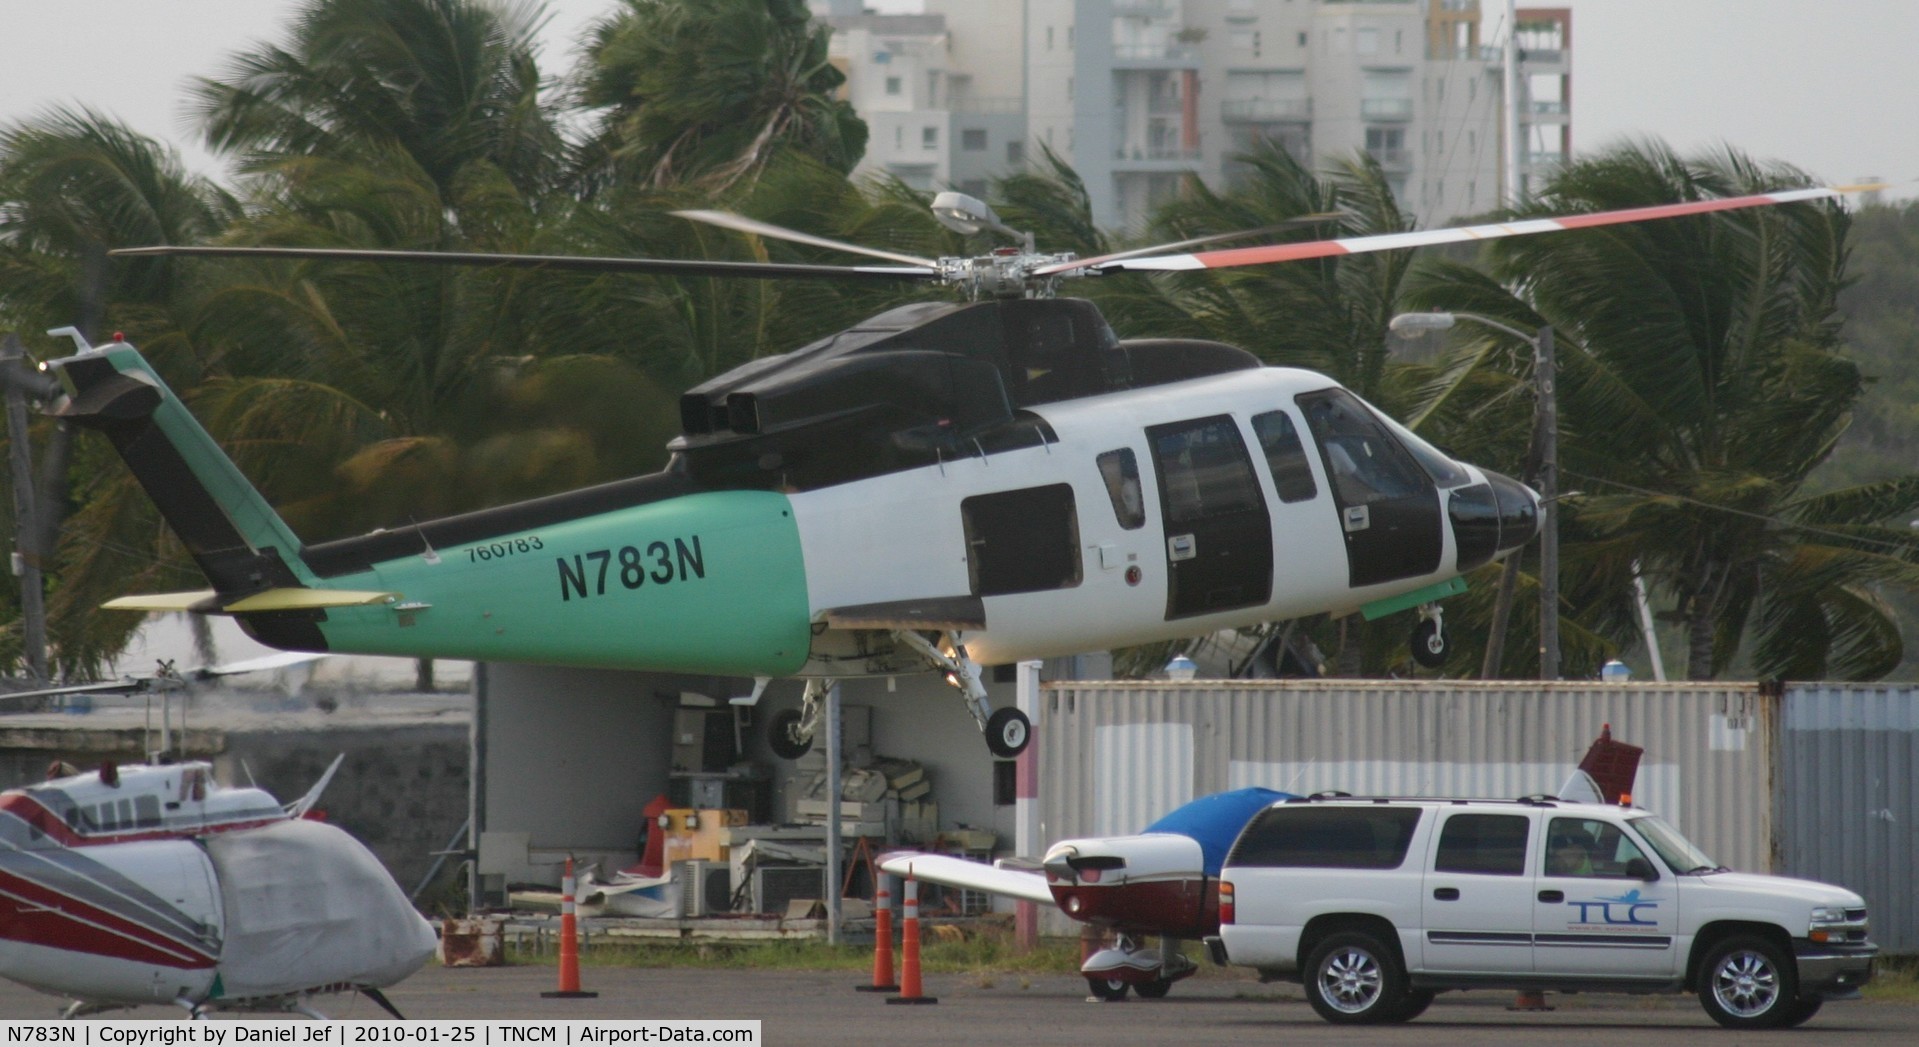 N783N, Sikorsky S-76C C/N 760783, N783N landing at the landing pad with there handlers in sight